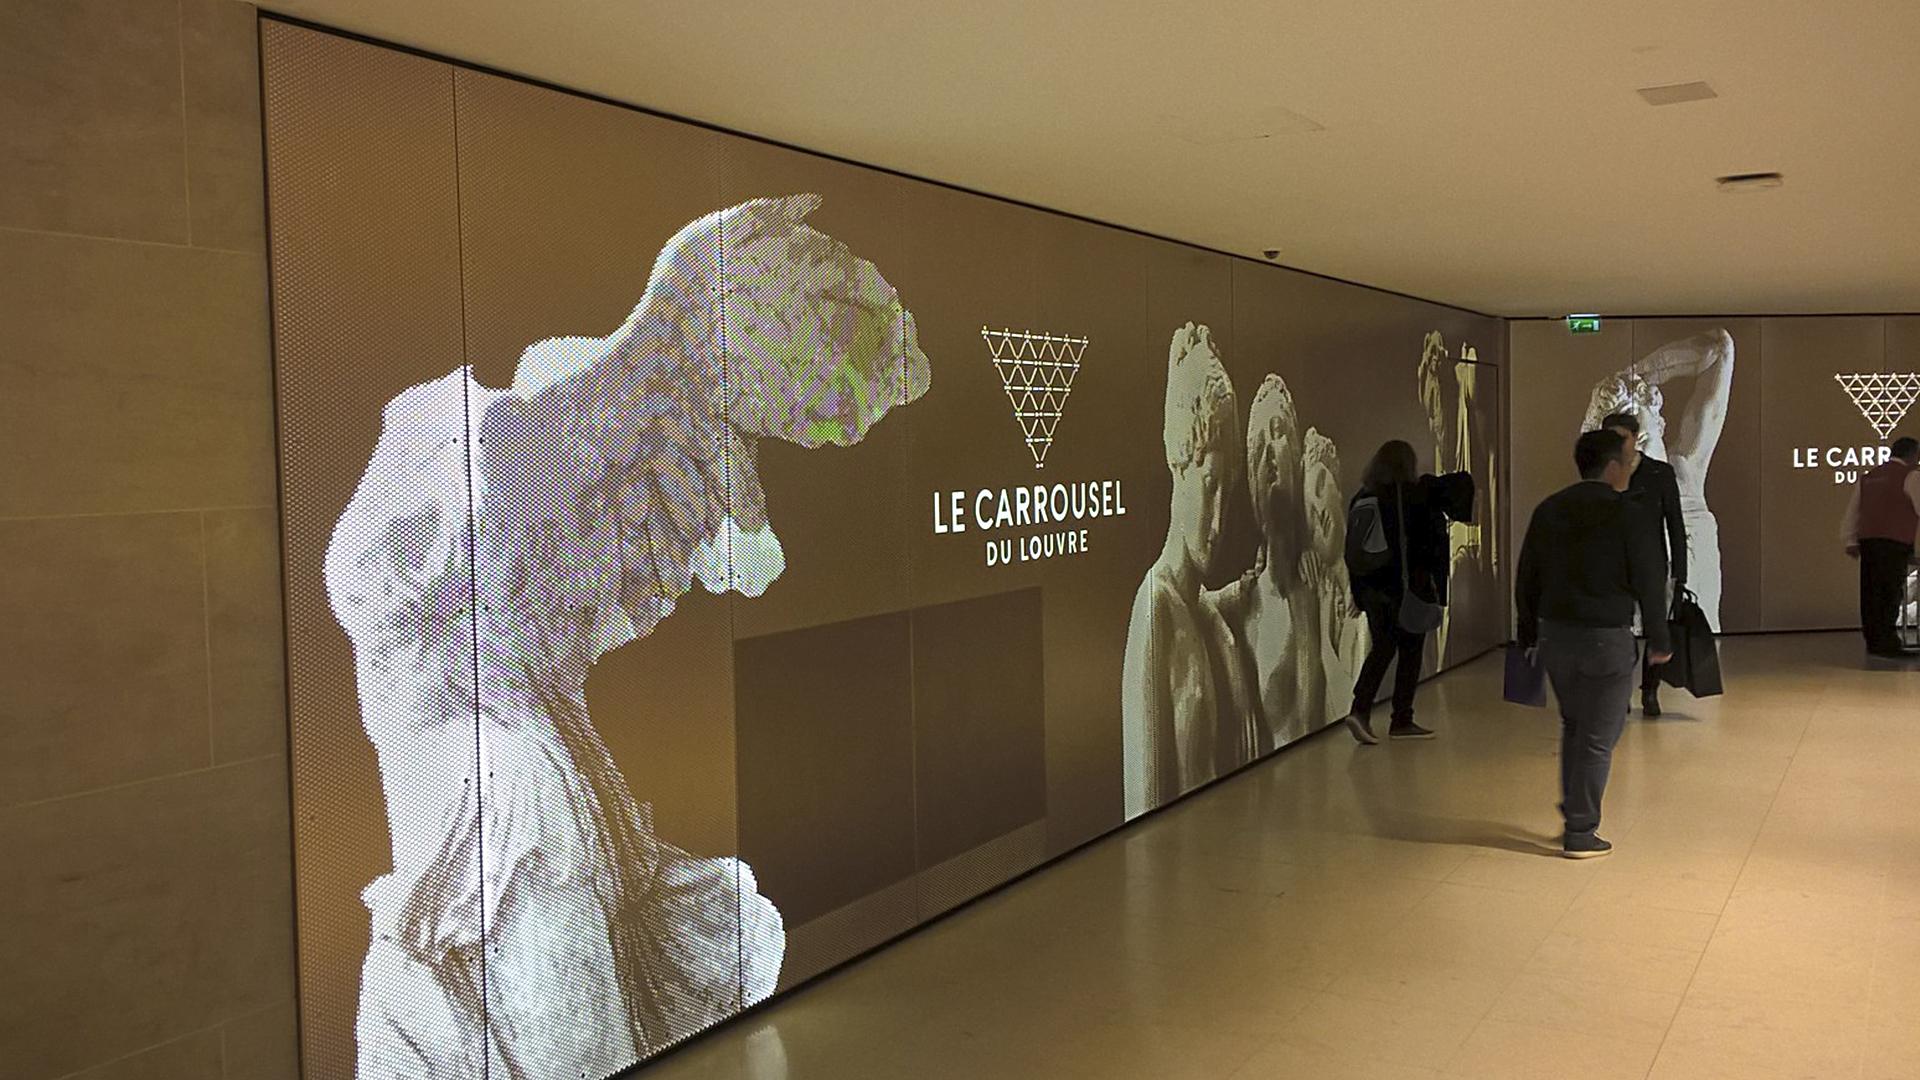 Grand geste luminaire sur mesure pour le Carroussel du Louvre Paris par Visotec